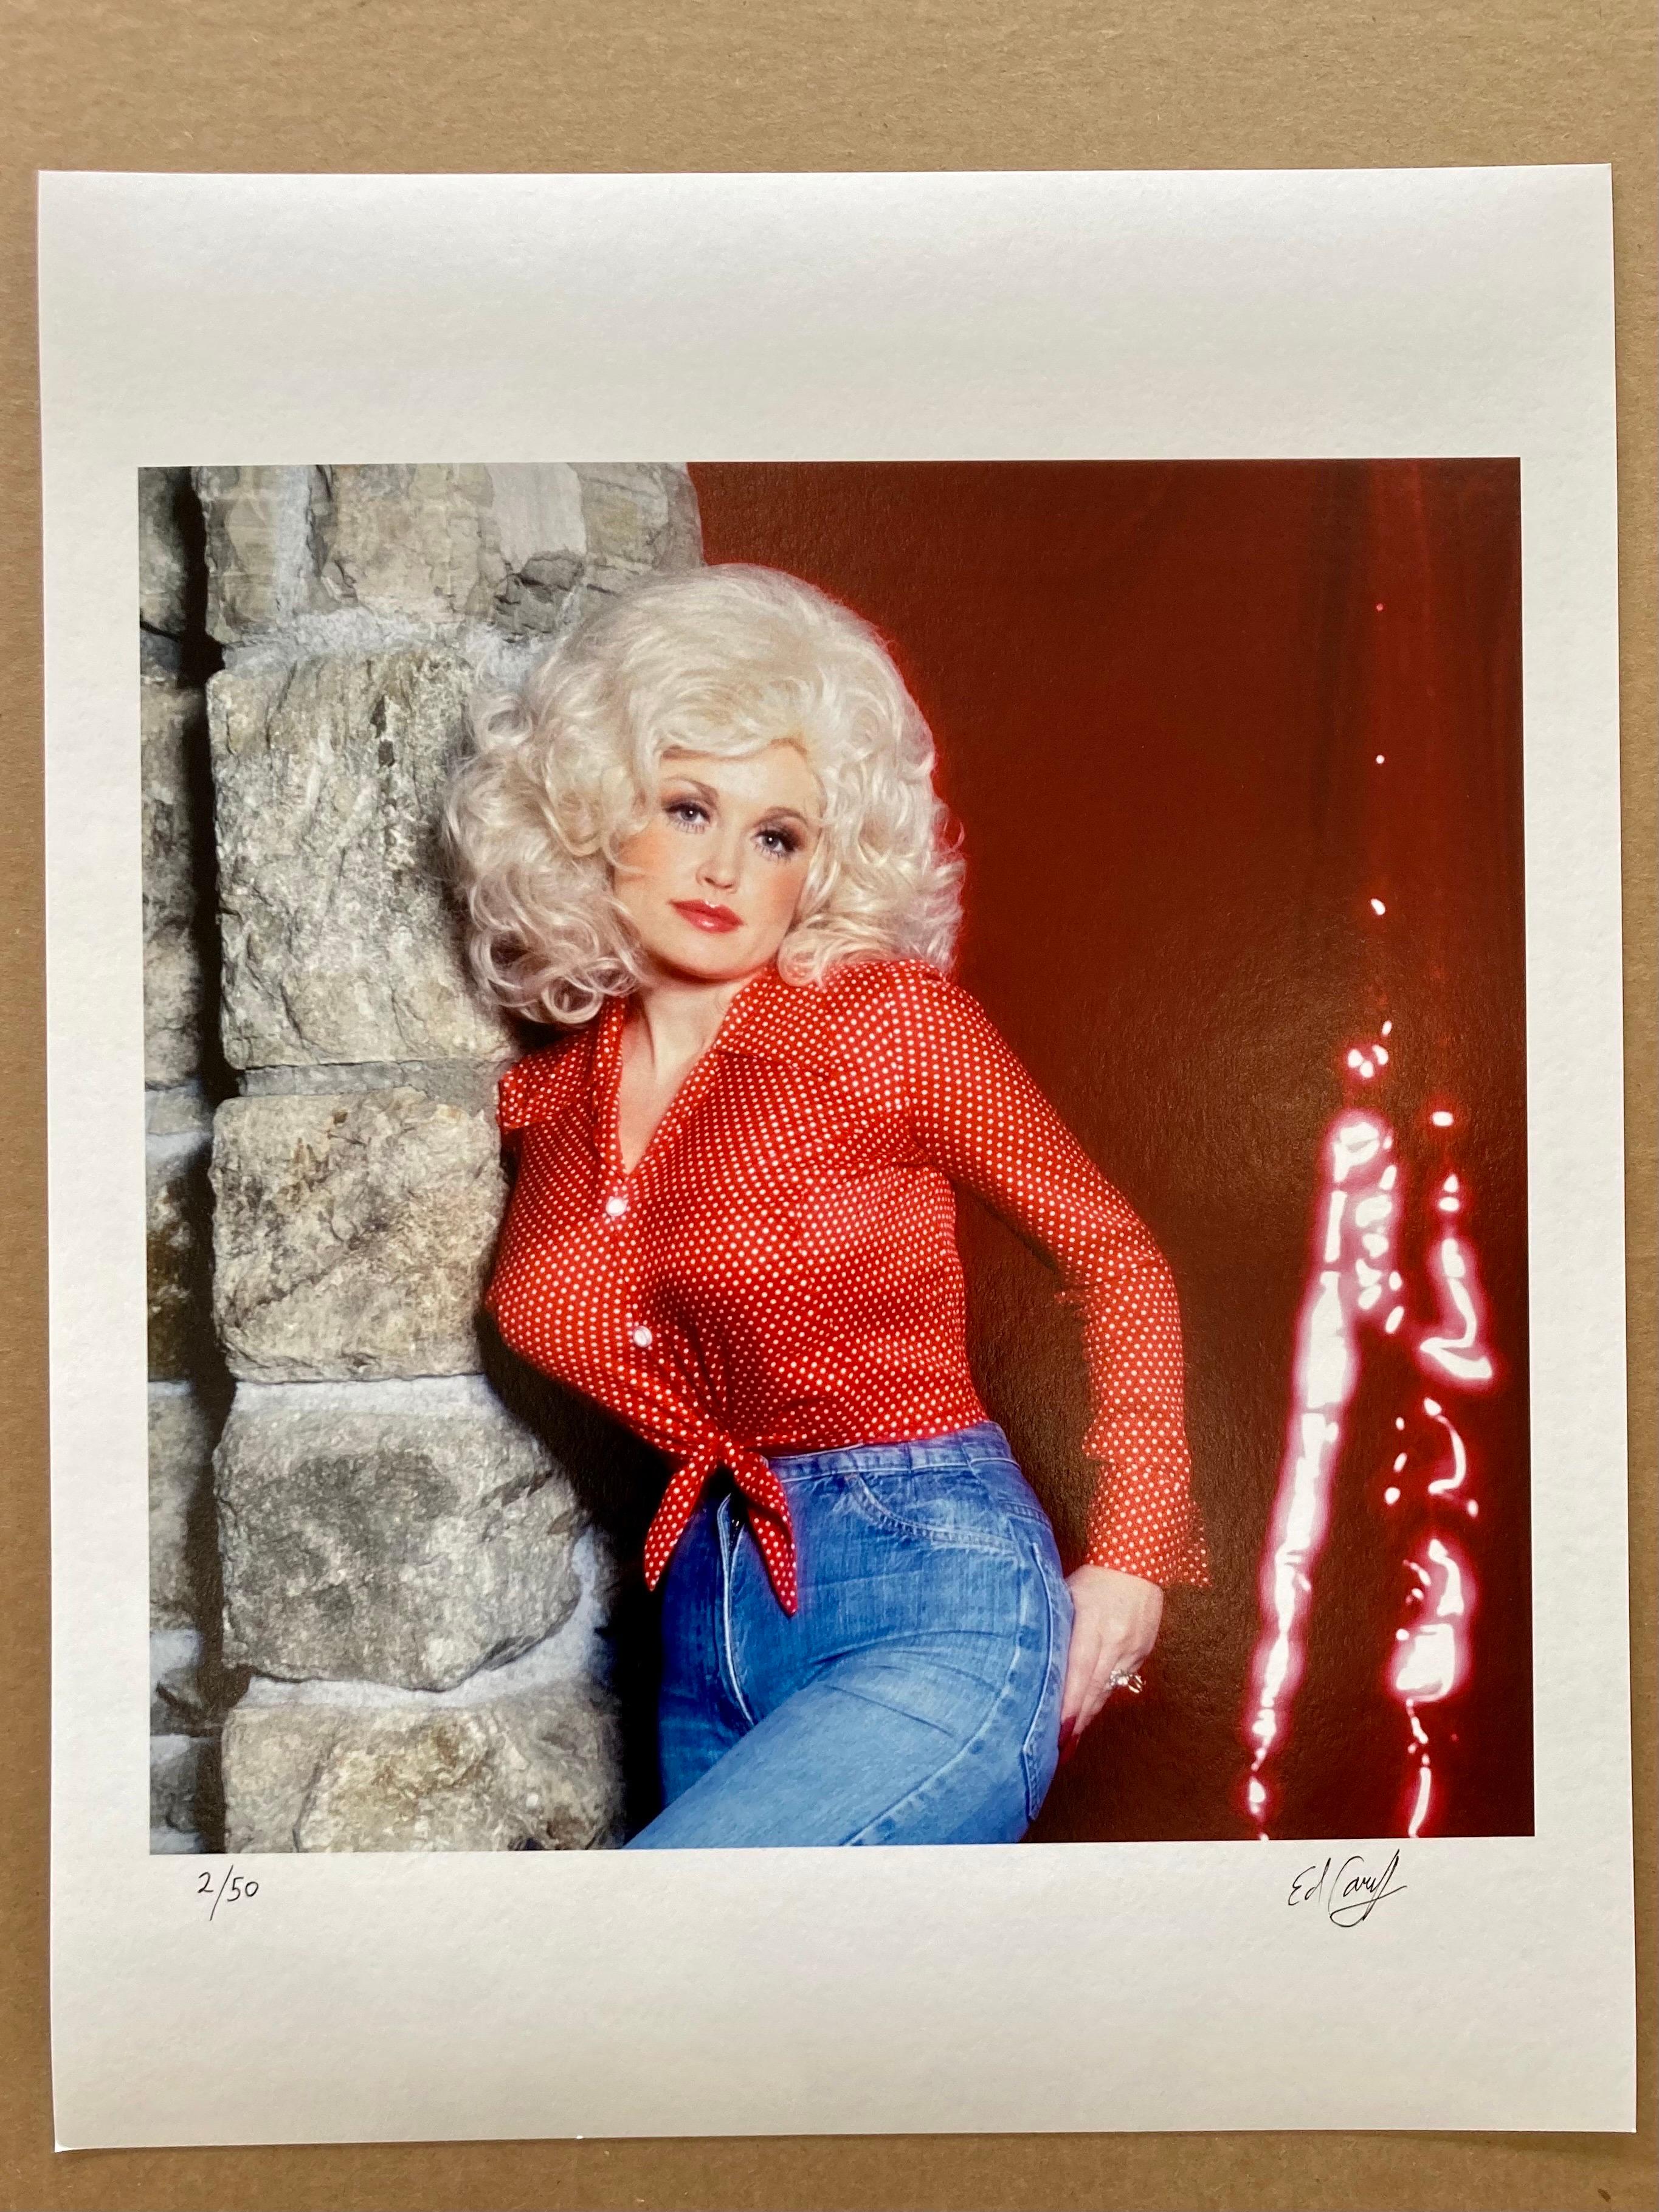 Dolly Parton « Here You Come Again » (Votre venu à nouveau) - Photograph de Ed Caraeff